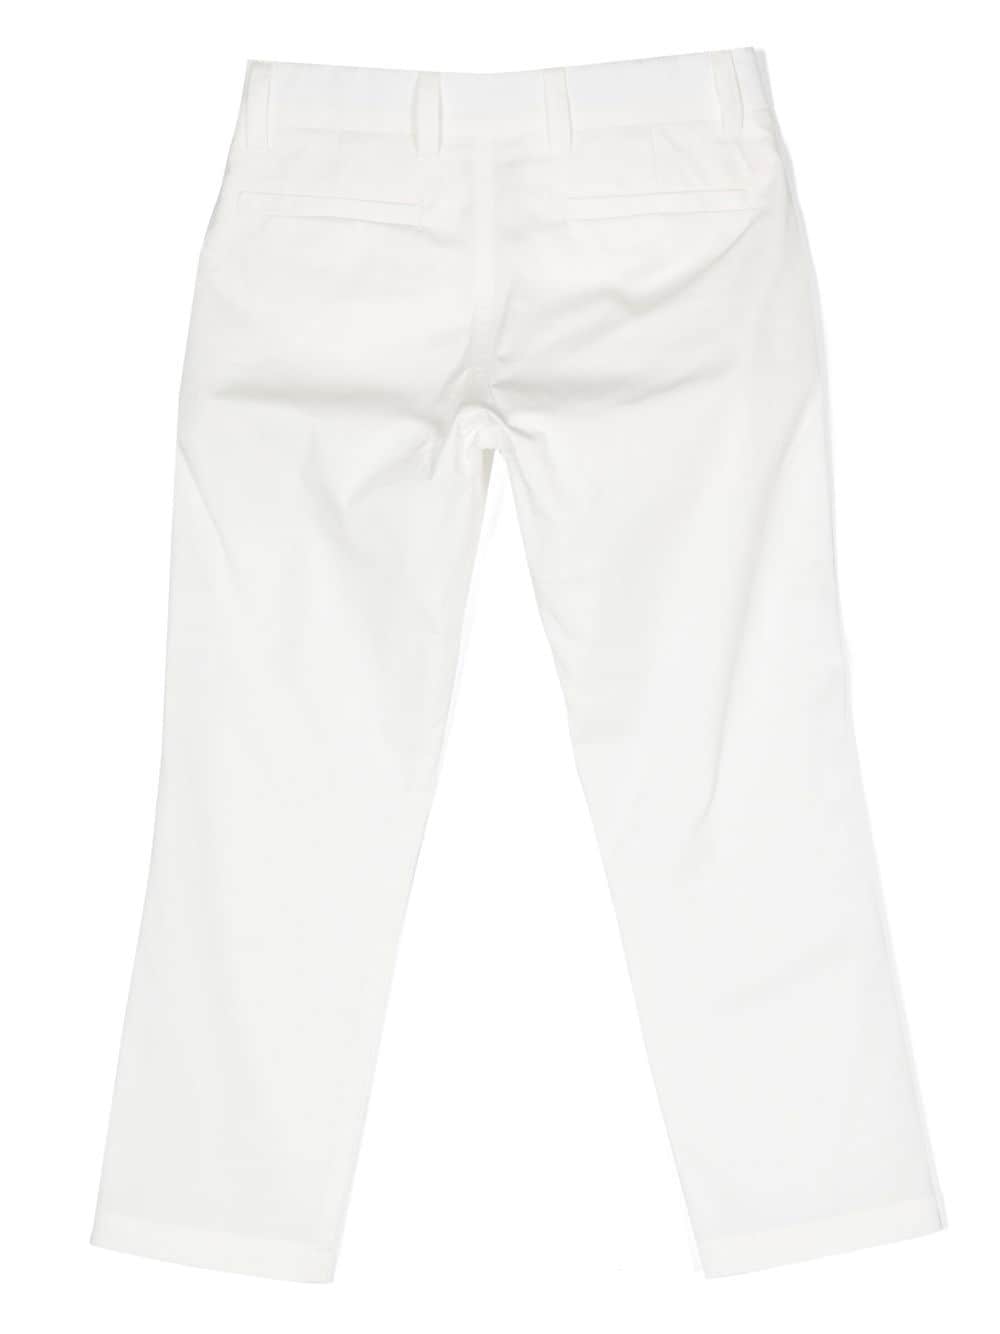 Pantalone bianco per bambino